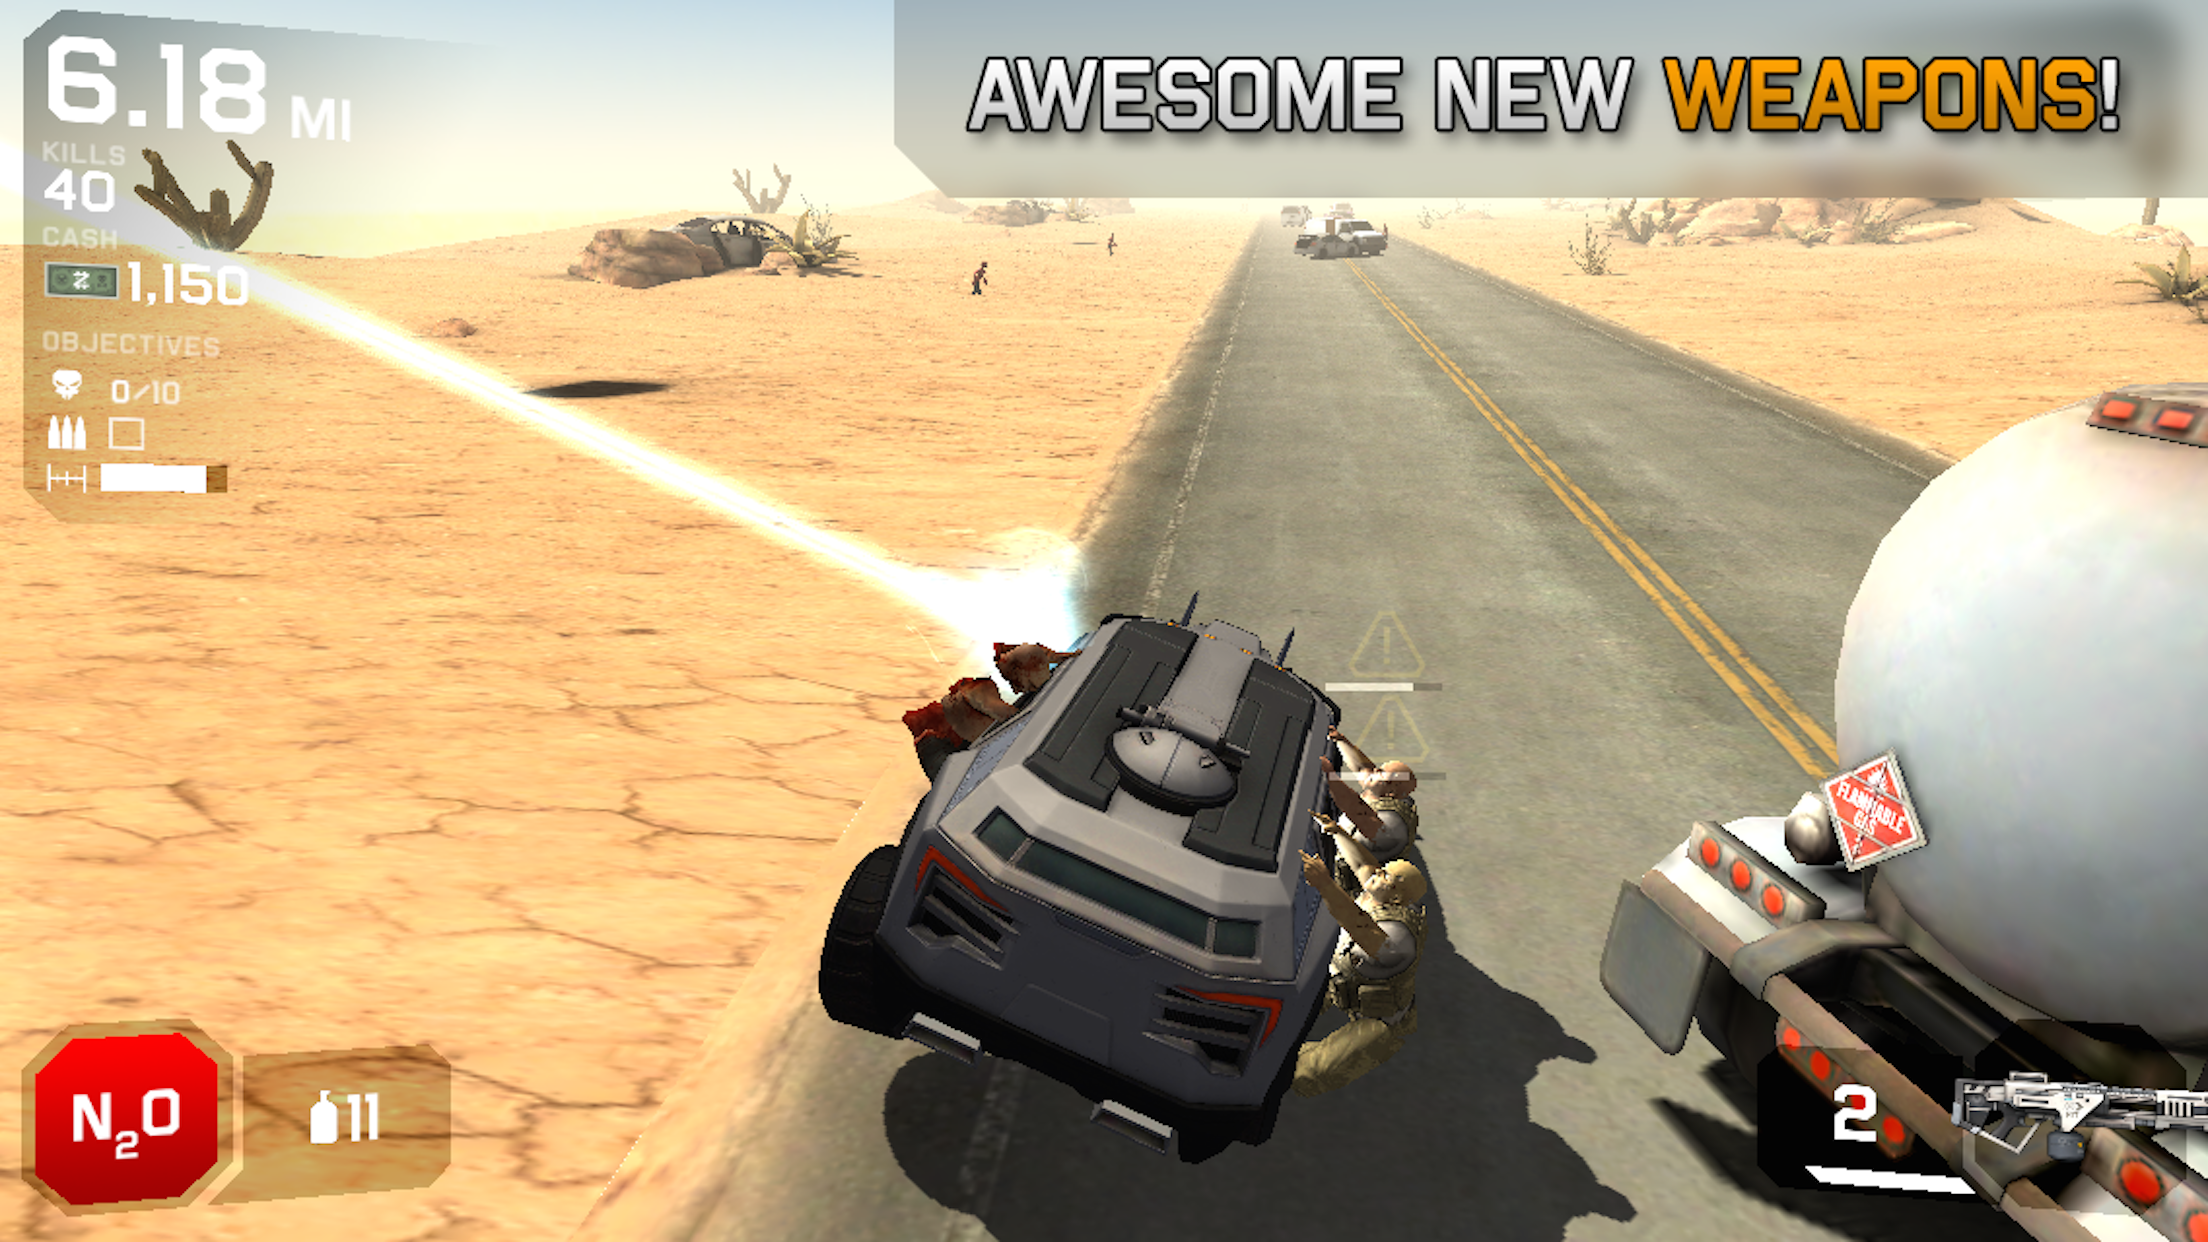 Screenshot of Zombie Highway 2